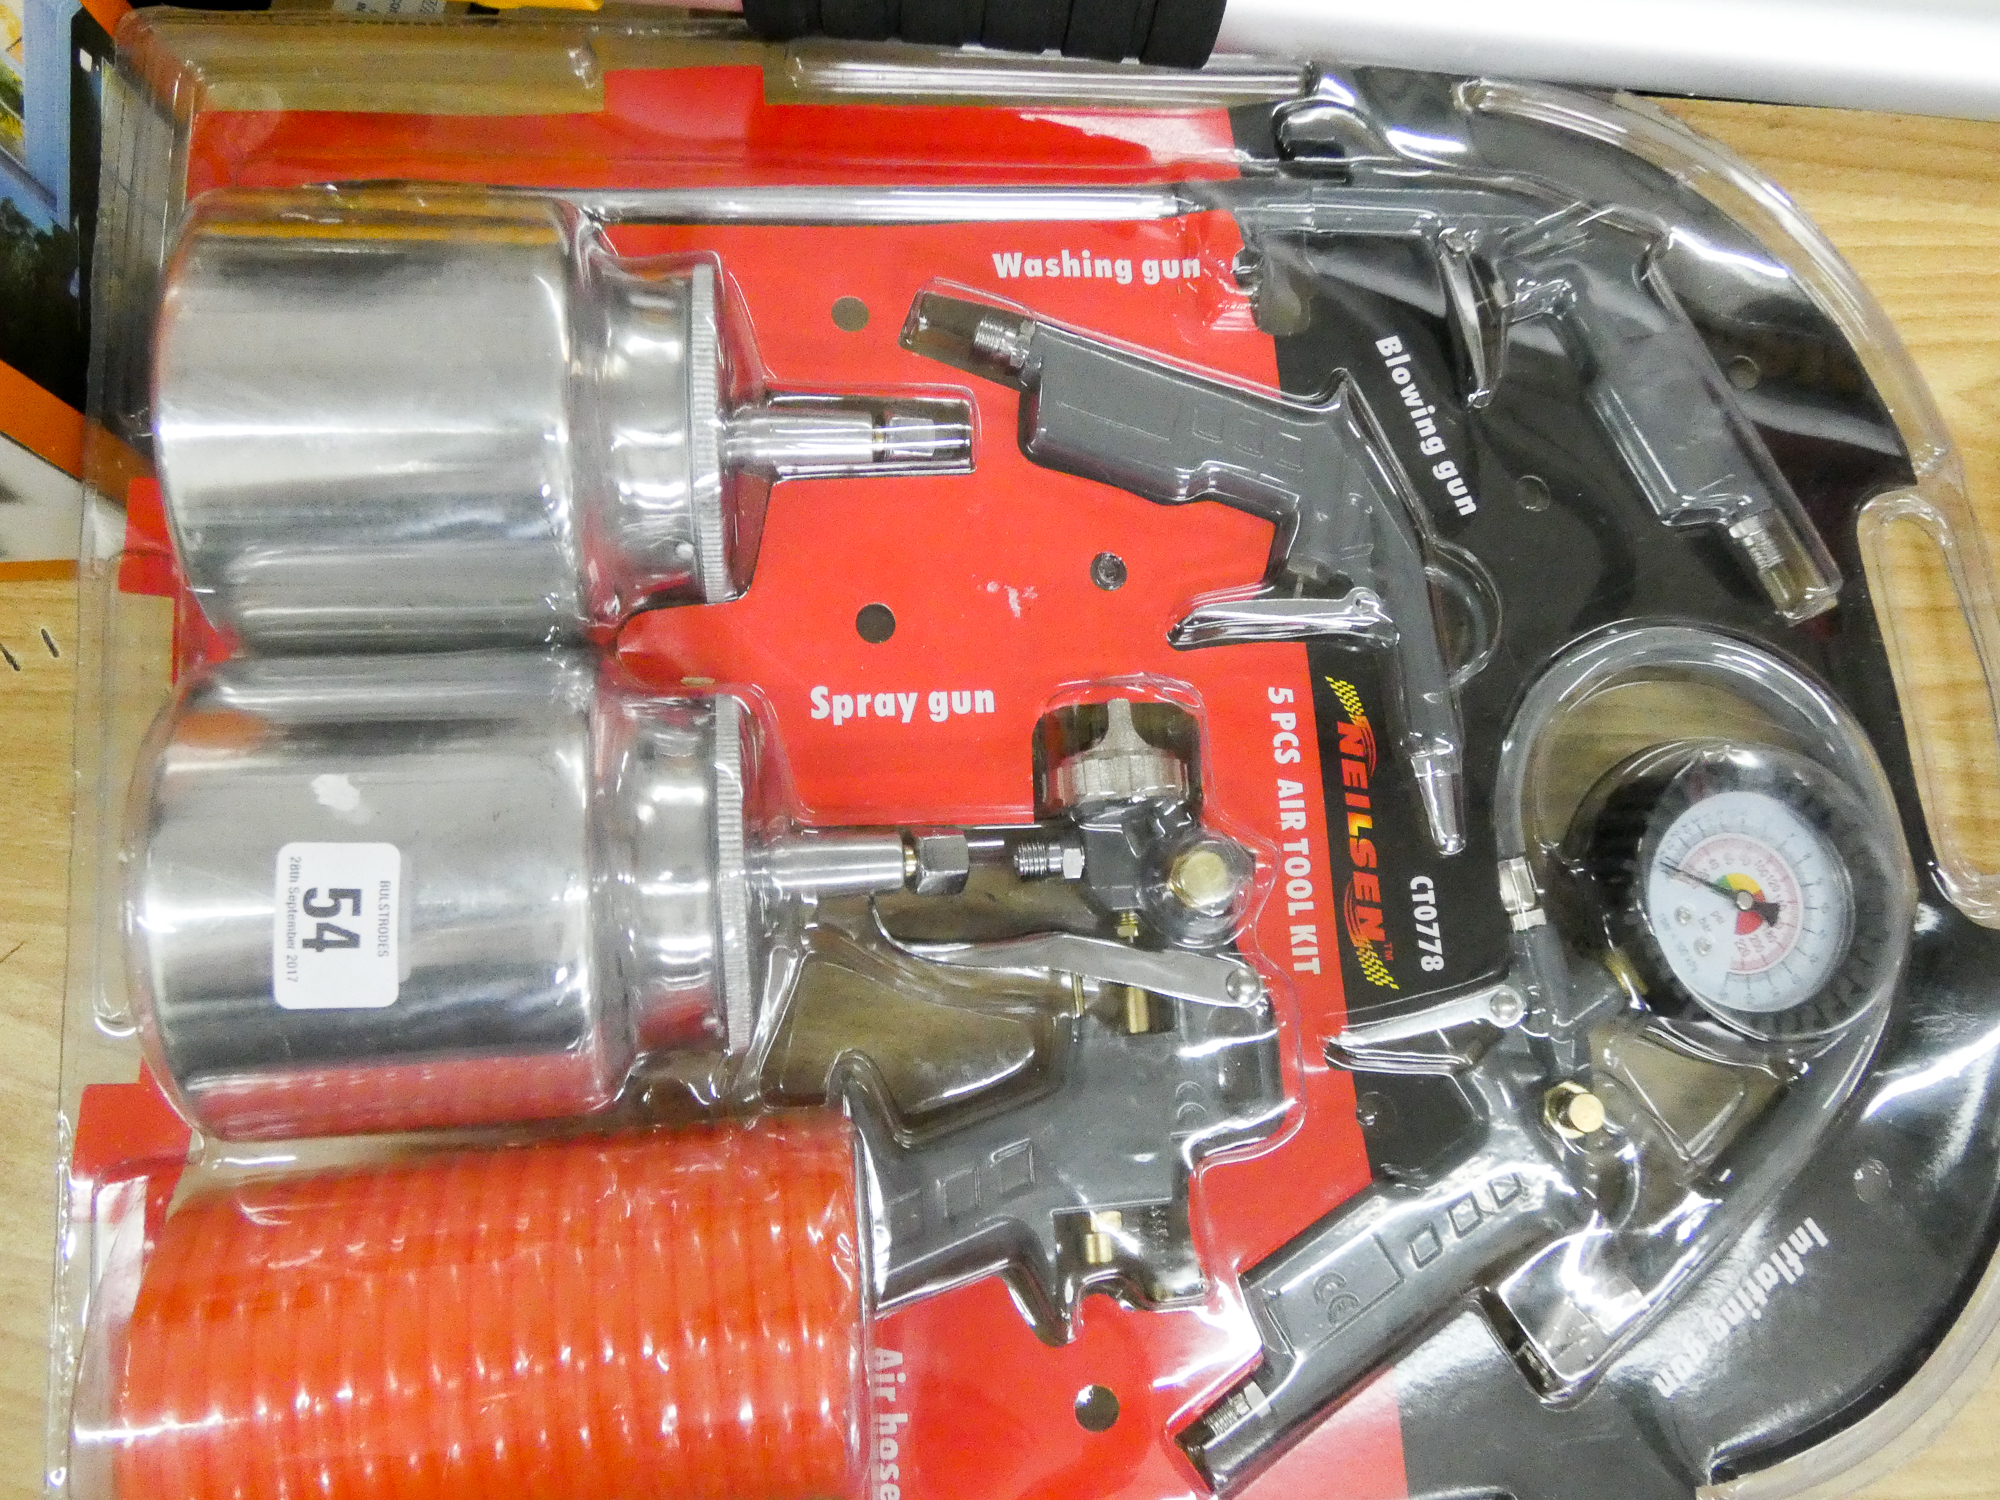 A 5 piece air tool kit